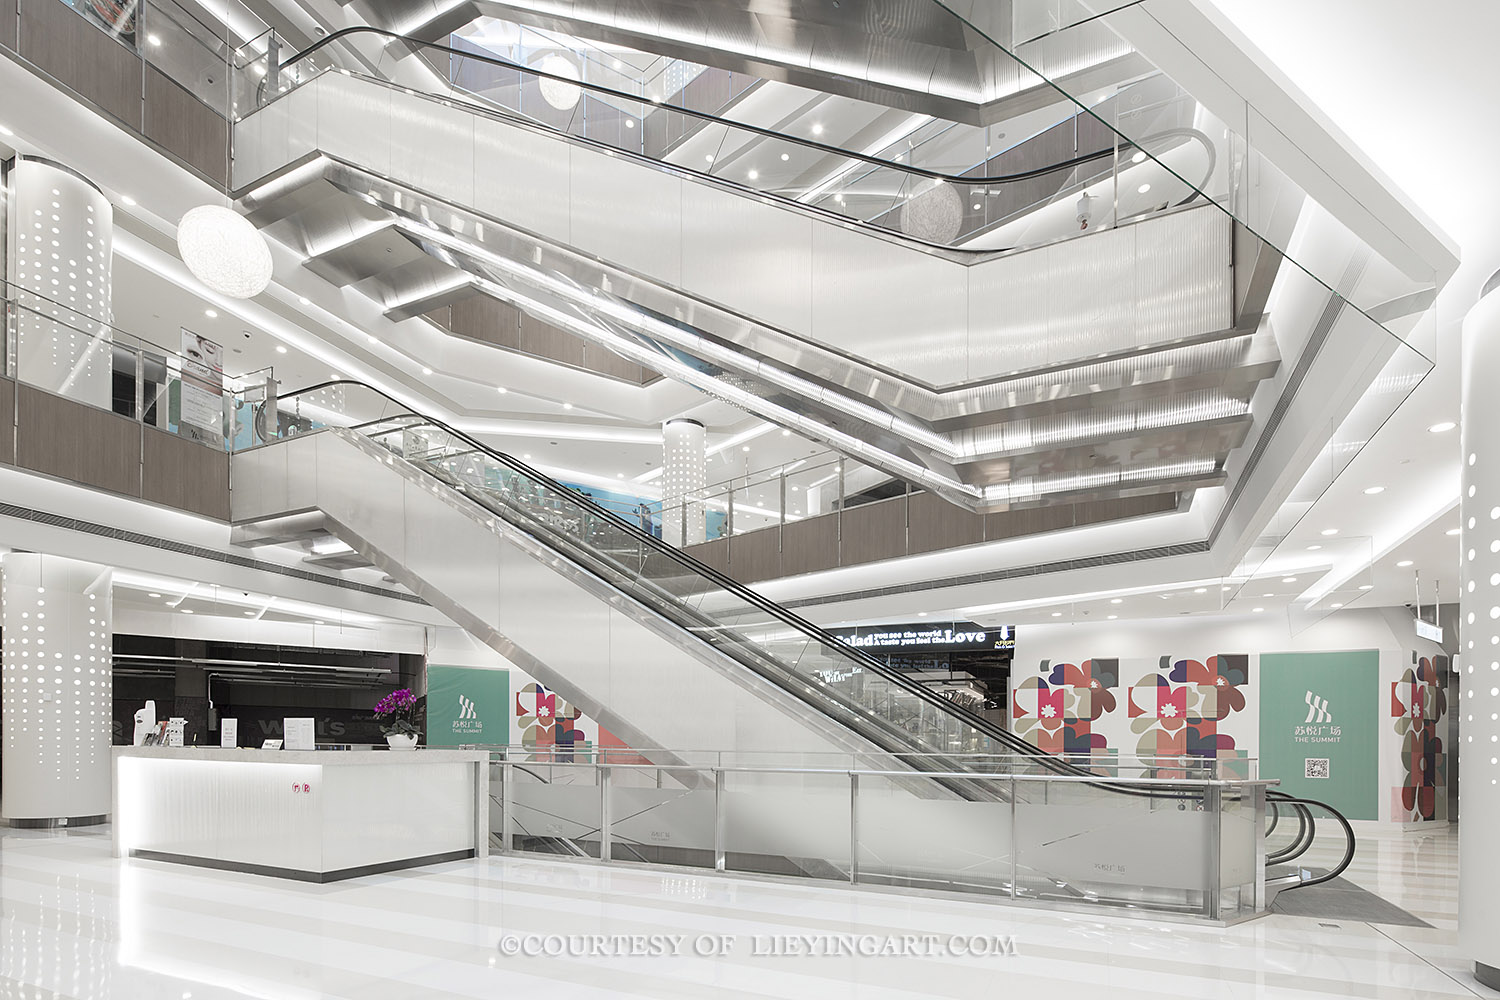 商业购物中心,现代化多功能手扶电梯,赋予艺术空间感.